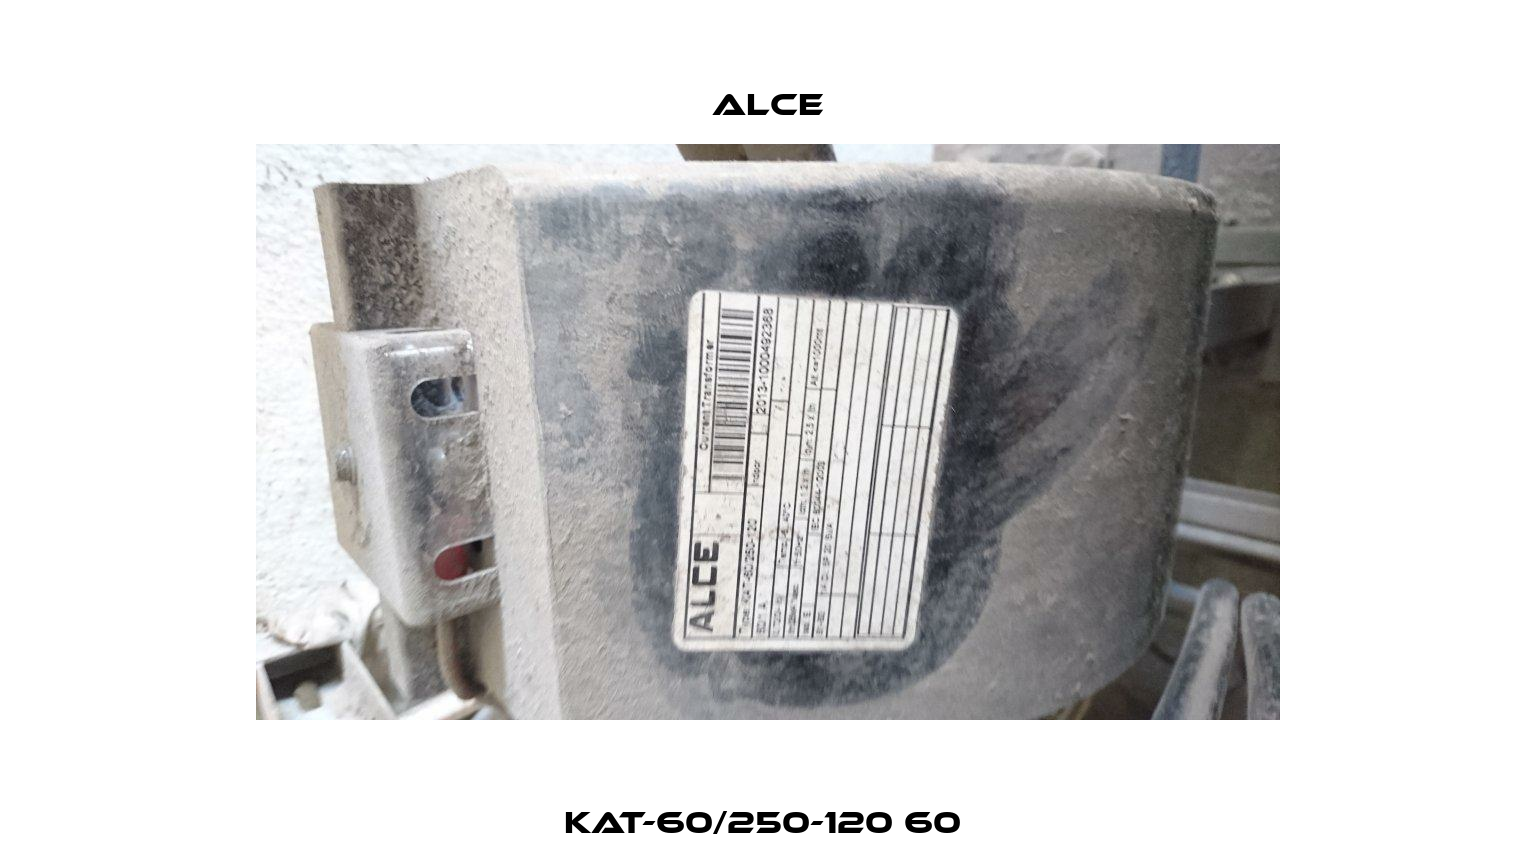 KAT-60/250-120 60  Alce